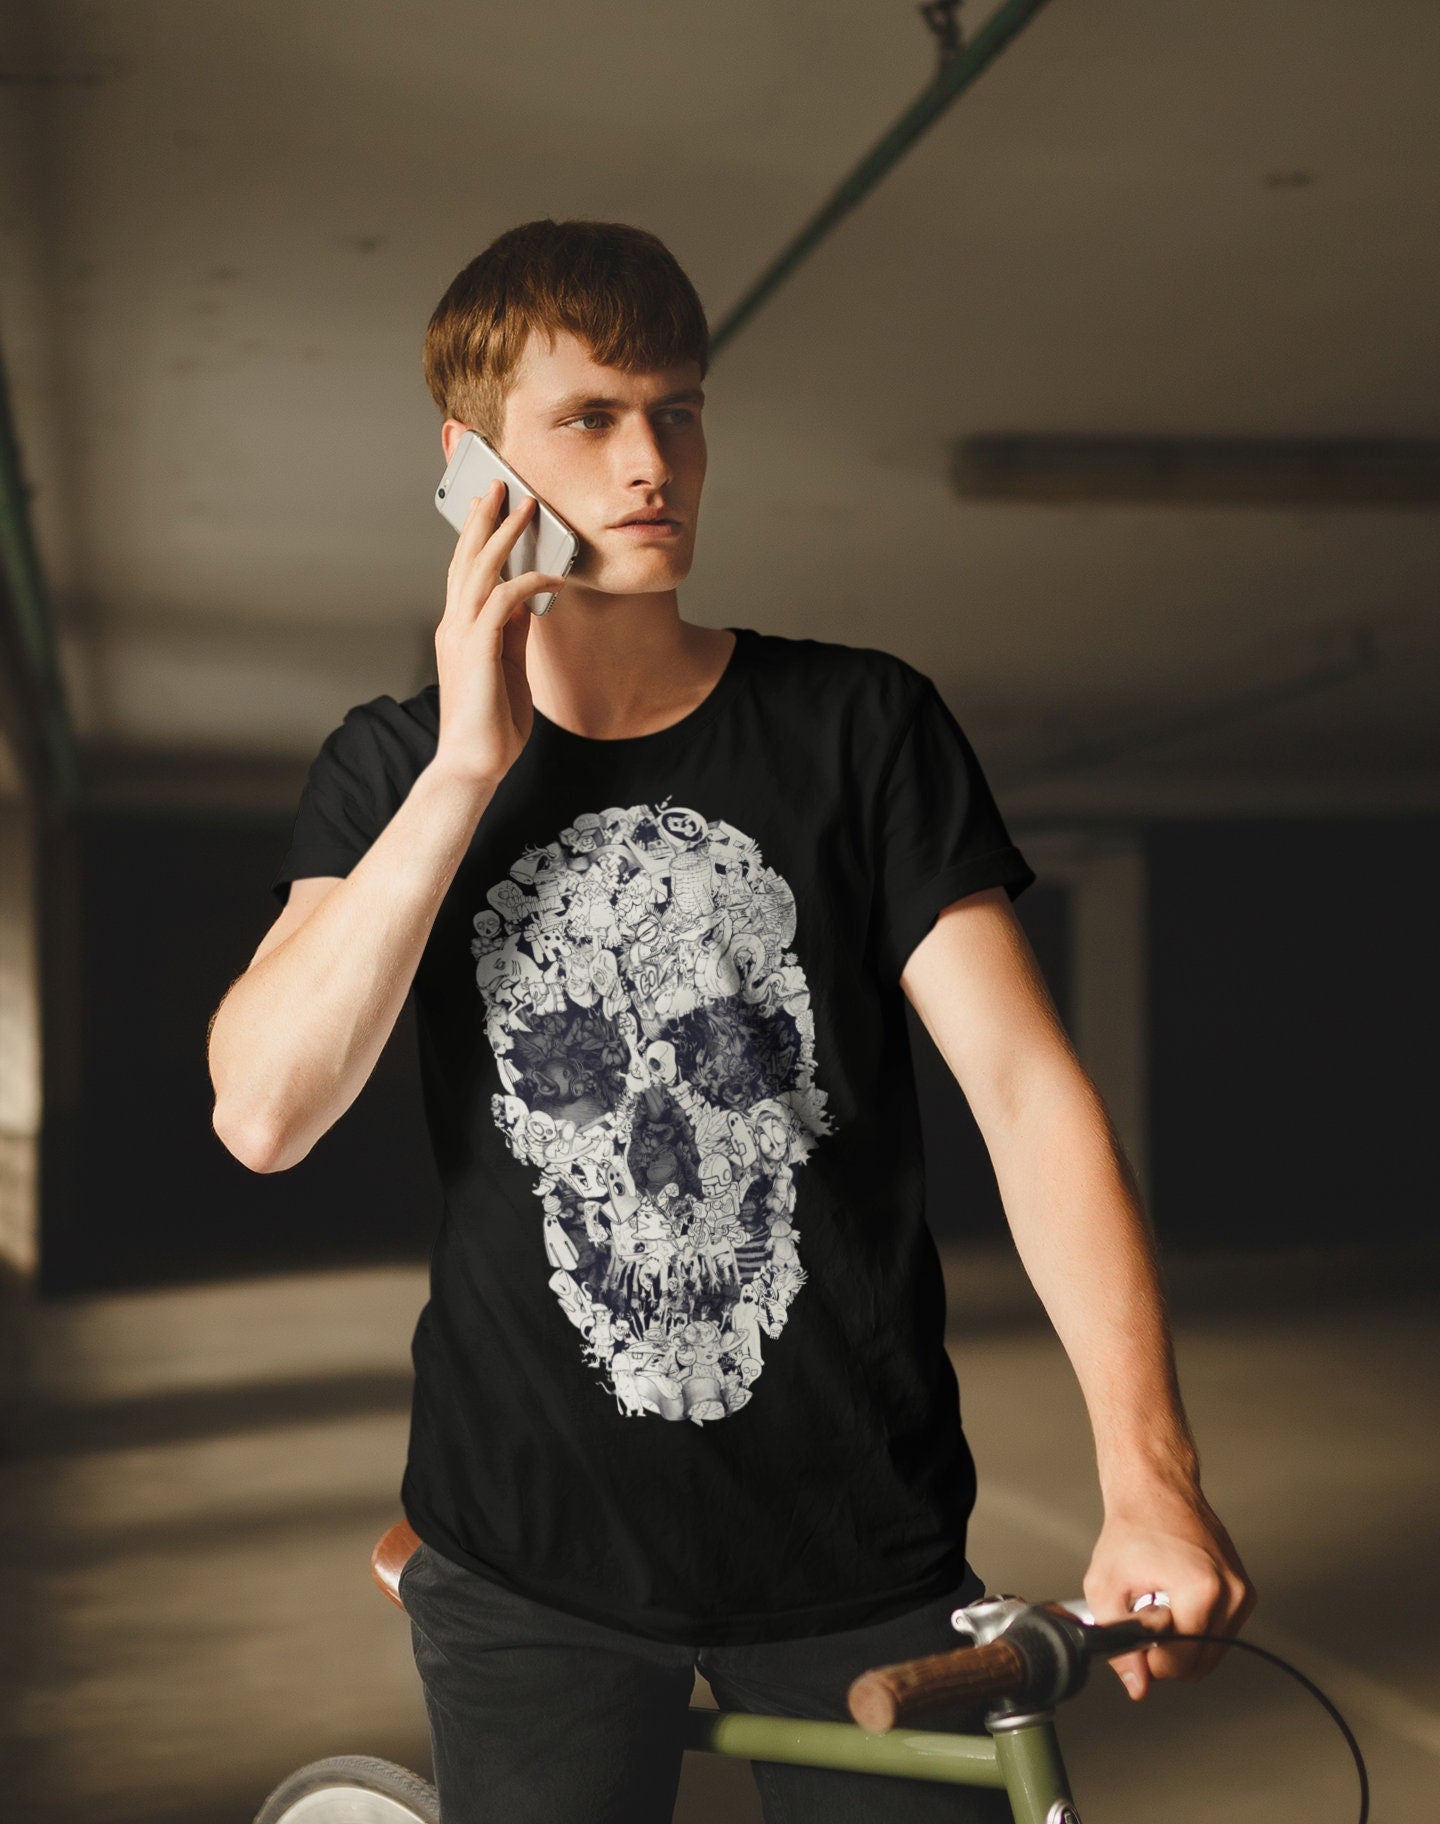 Doodle Skull Men's T-shirt, Skull Art Print Mens Tshirt, Black And White Mens Graphic Tees, Skull Print Gift For Him